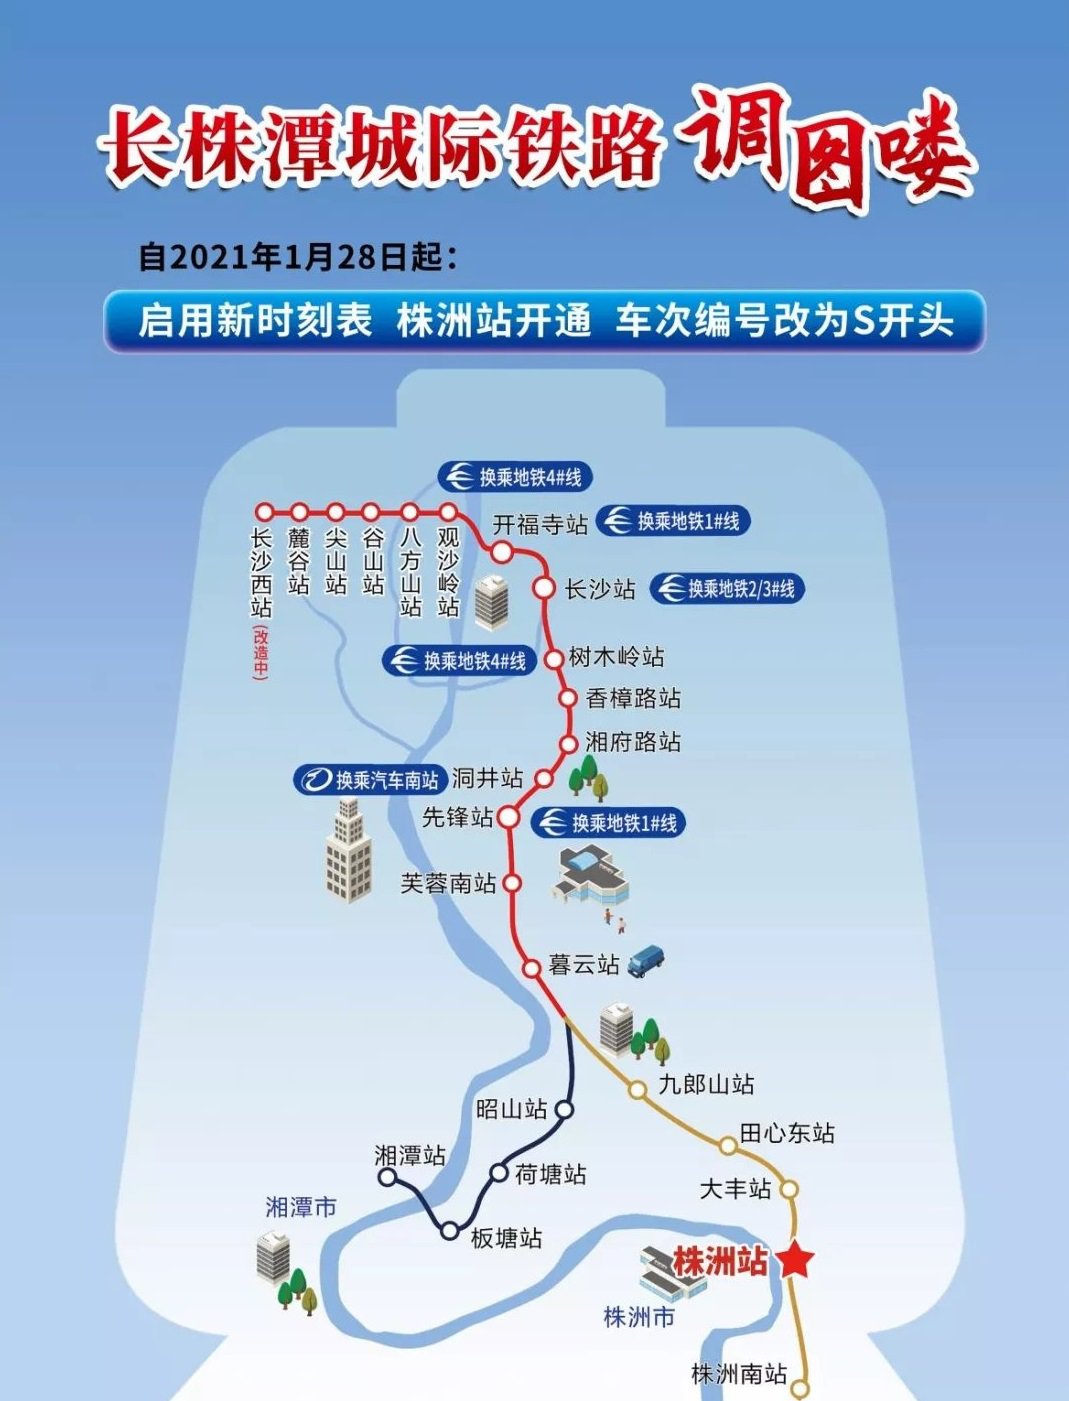 1月28日株洲火车站开通城际客运业务